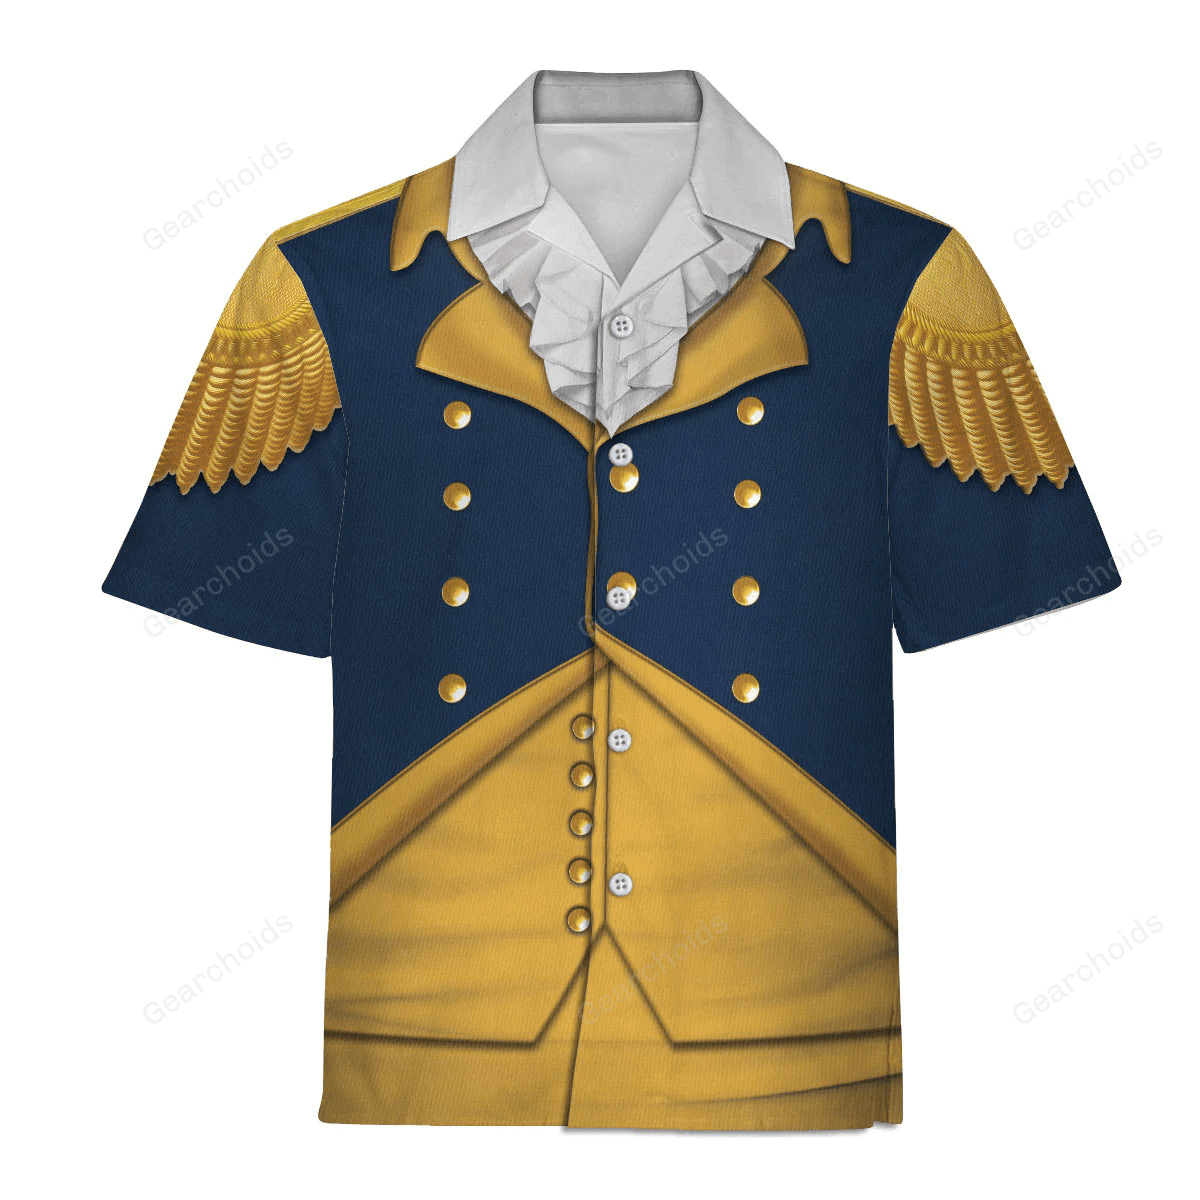 George Washington Indispensable Man Uniform  Hawaiian Shirt